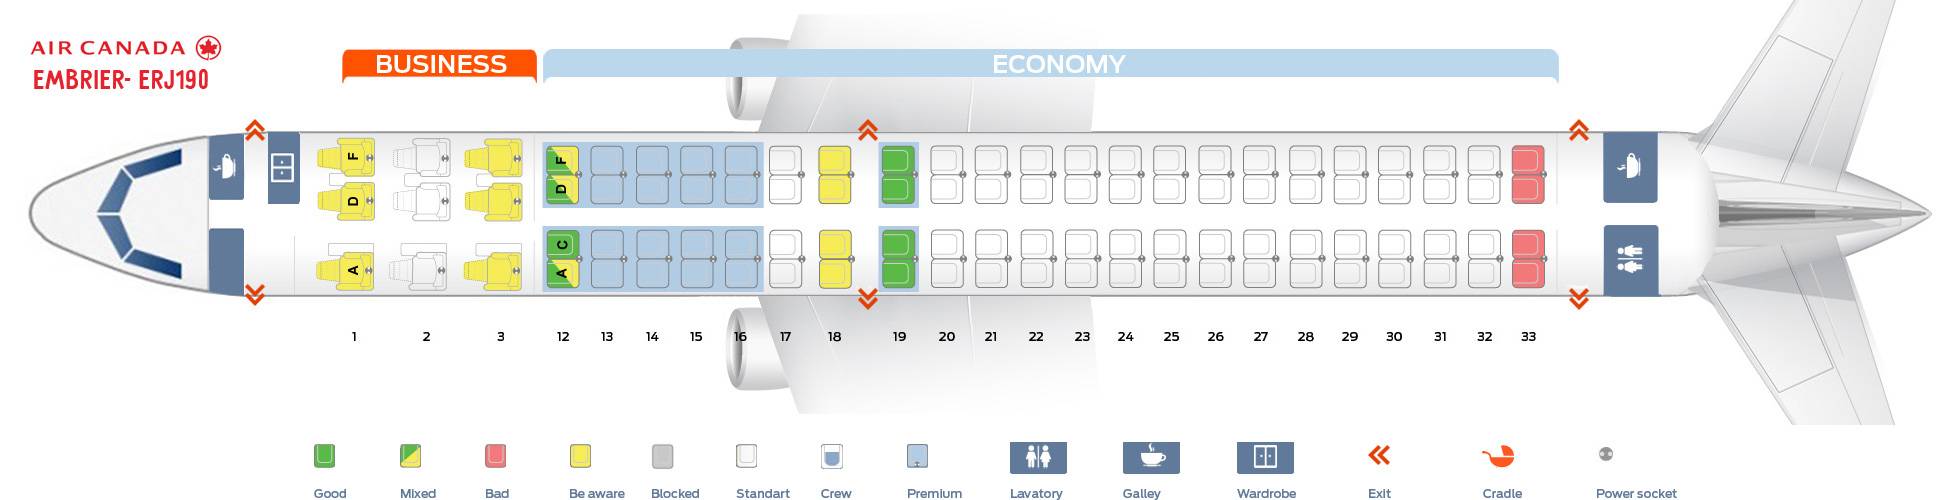 Все о салоне embraer 190: схема расположения лучших мест в самолете